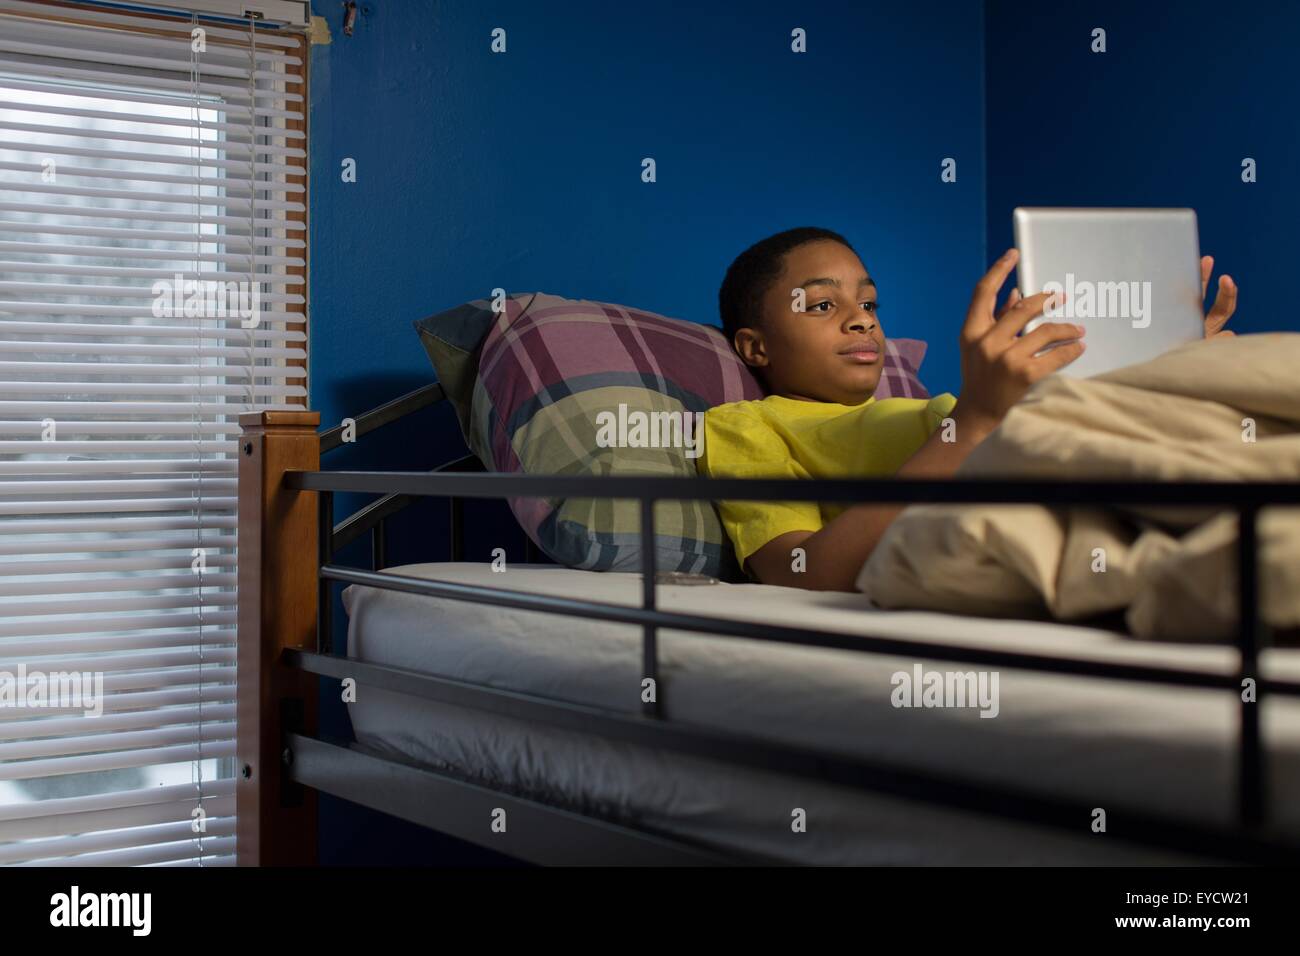 Teenage boy lying in bunkbed browsing digital tablet Stock Photo